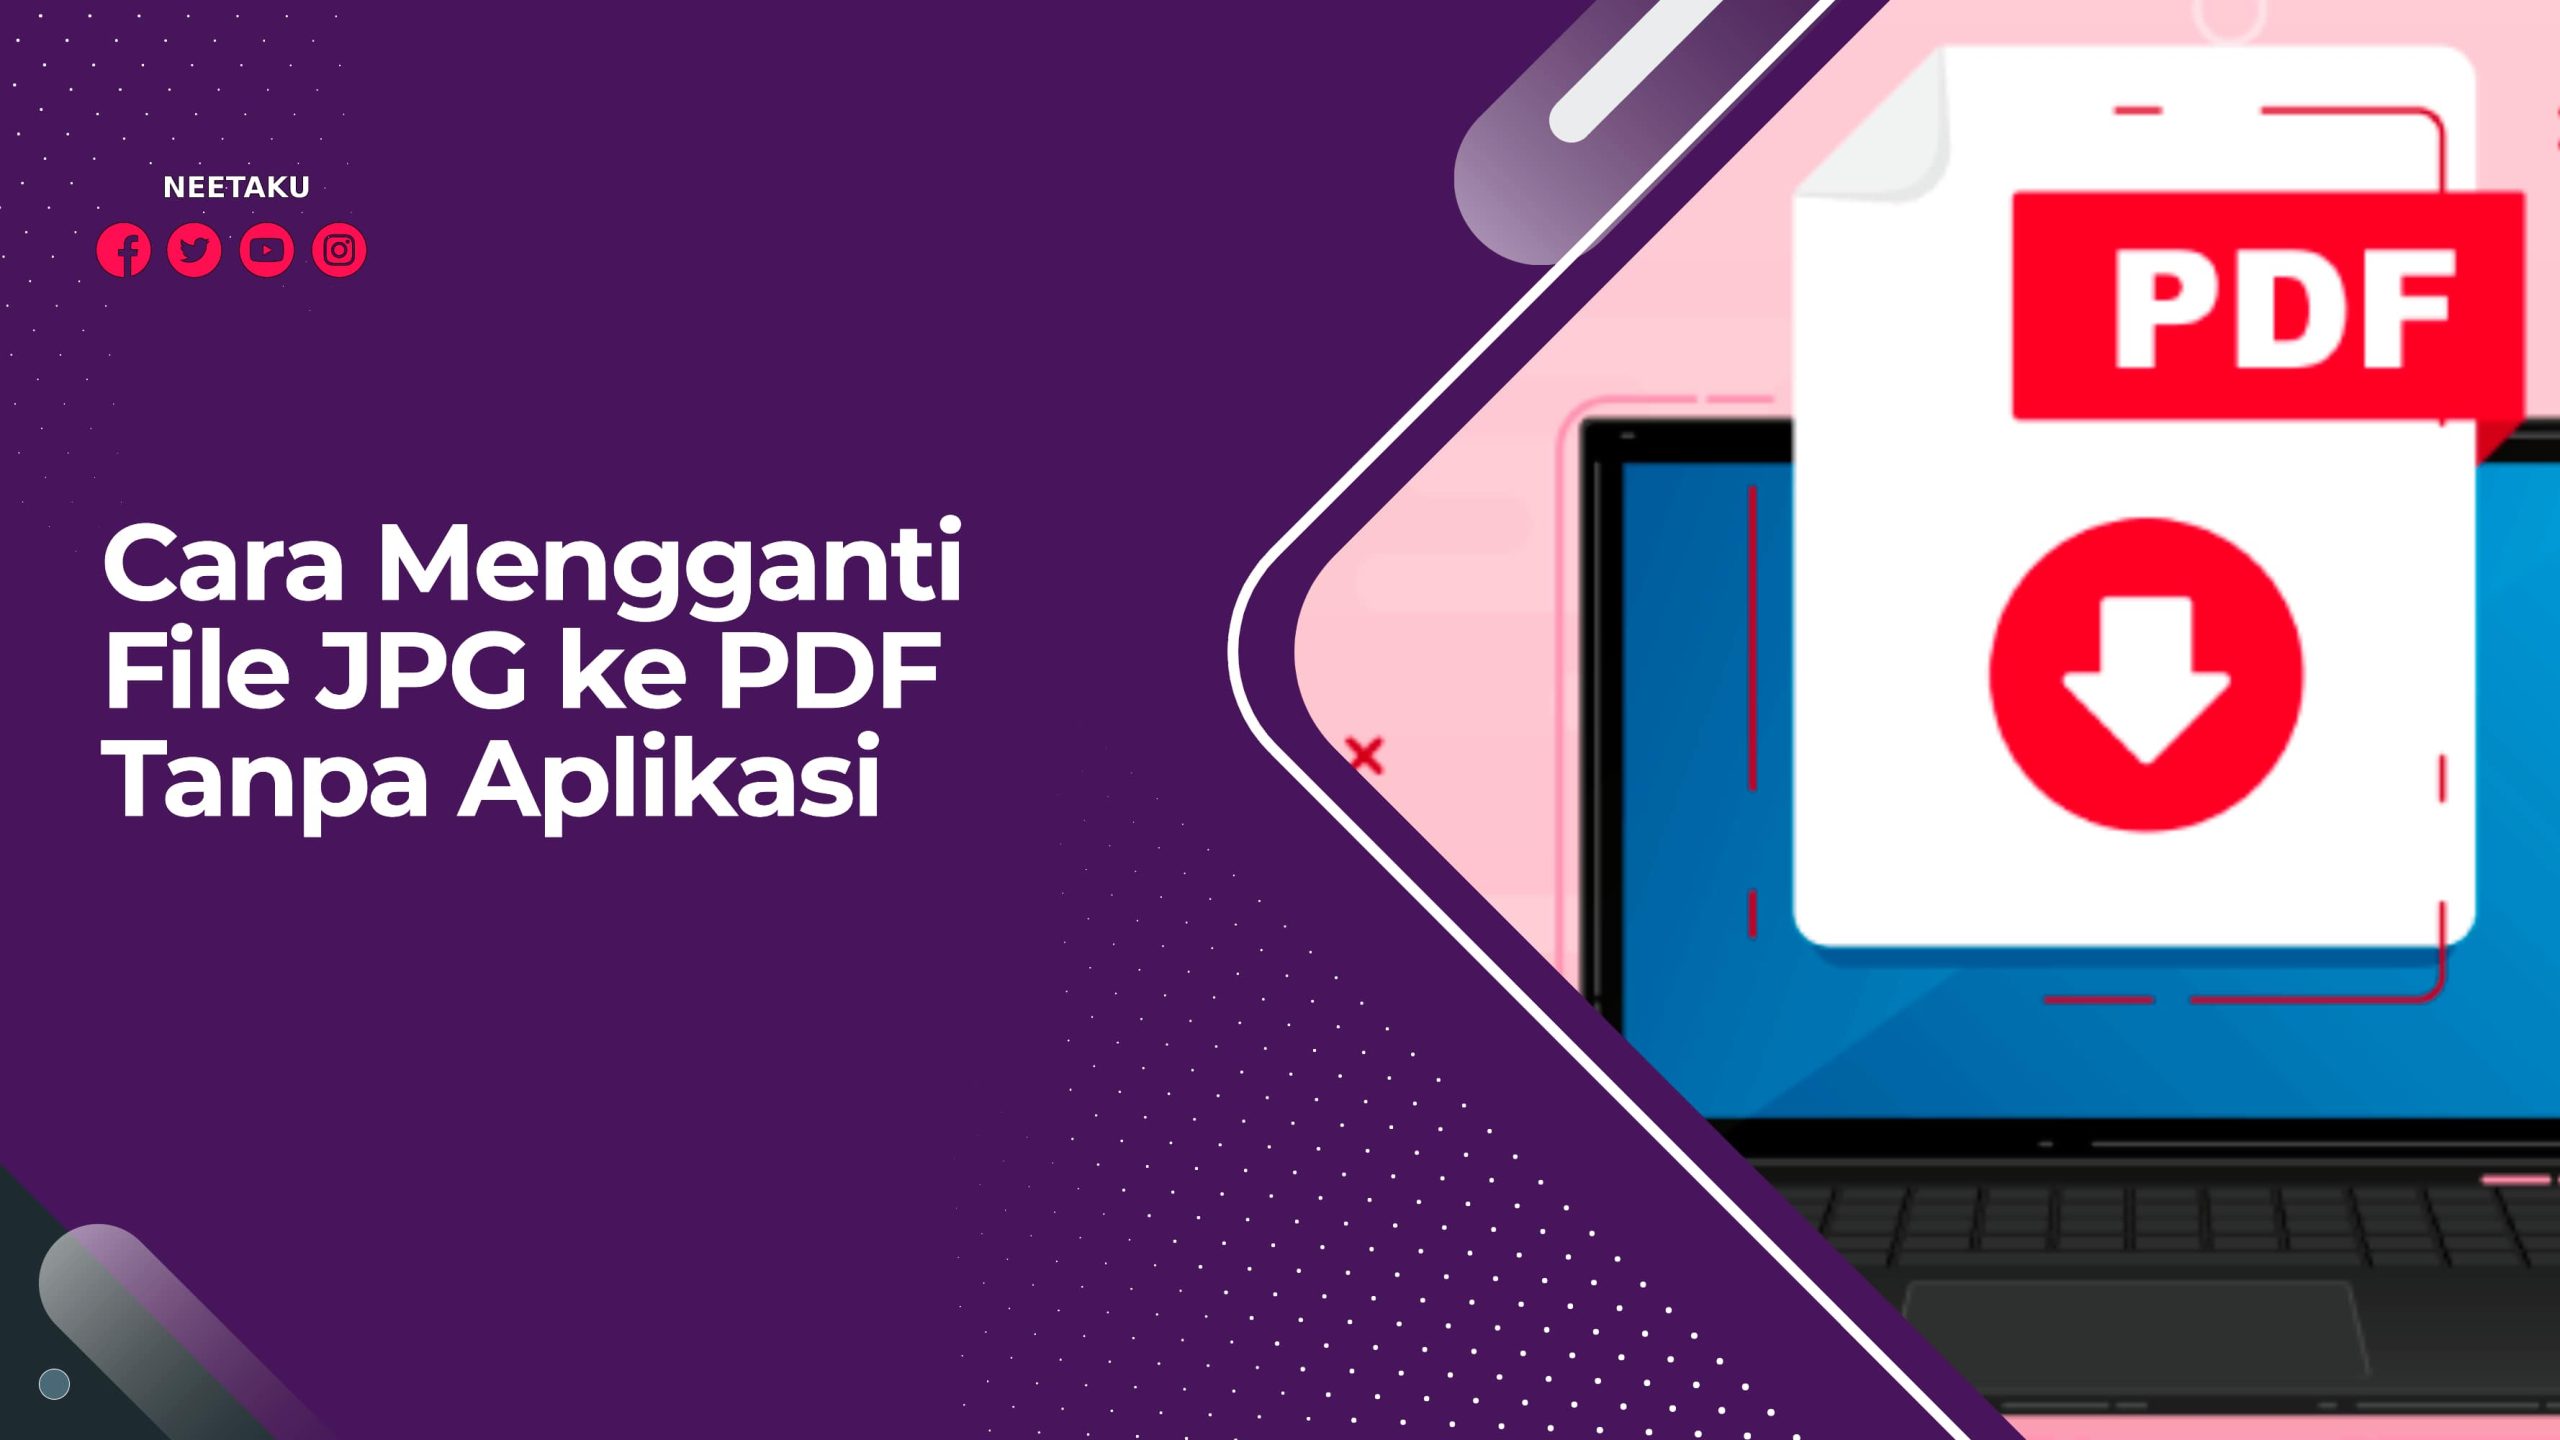 Cara Mengganti File JPG ke PDF